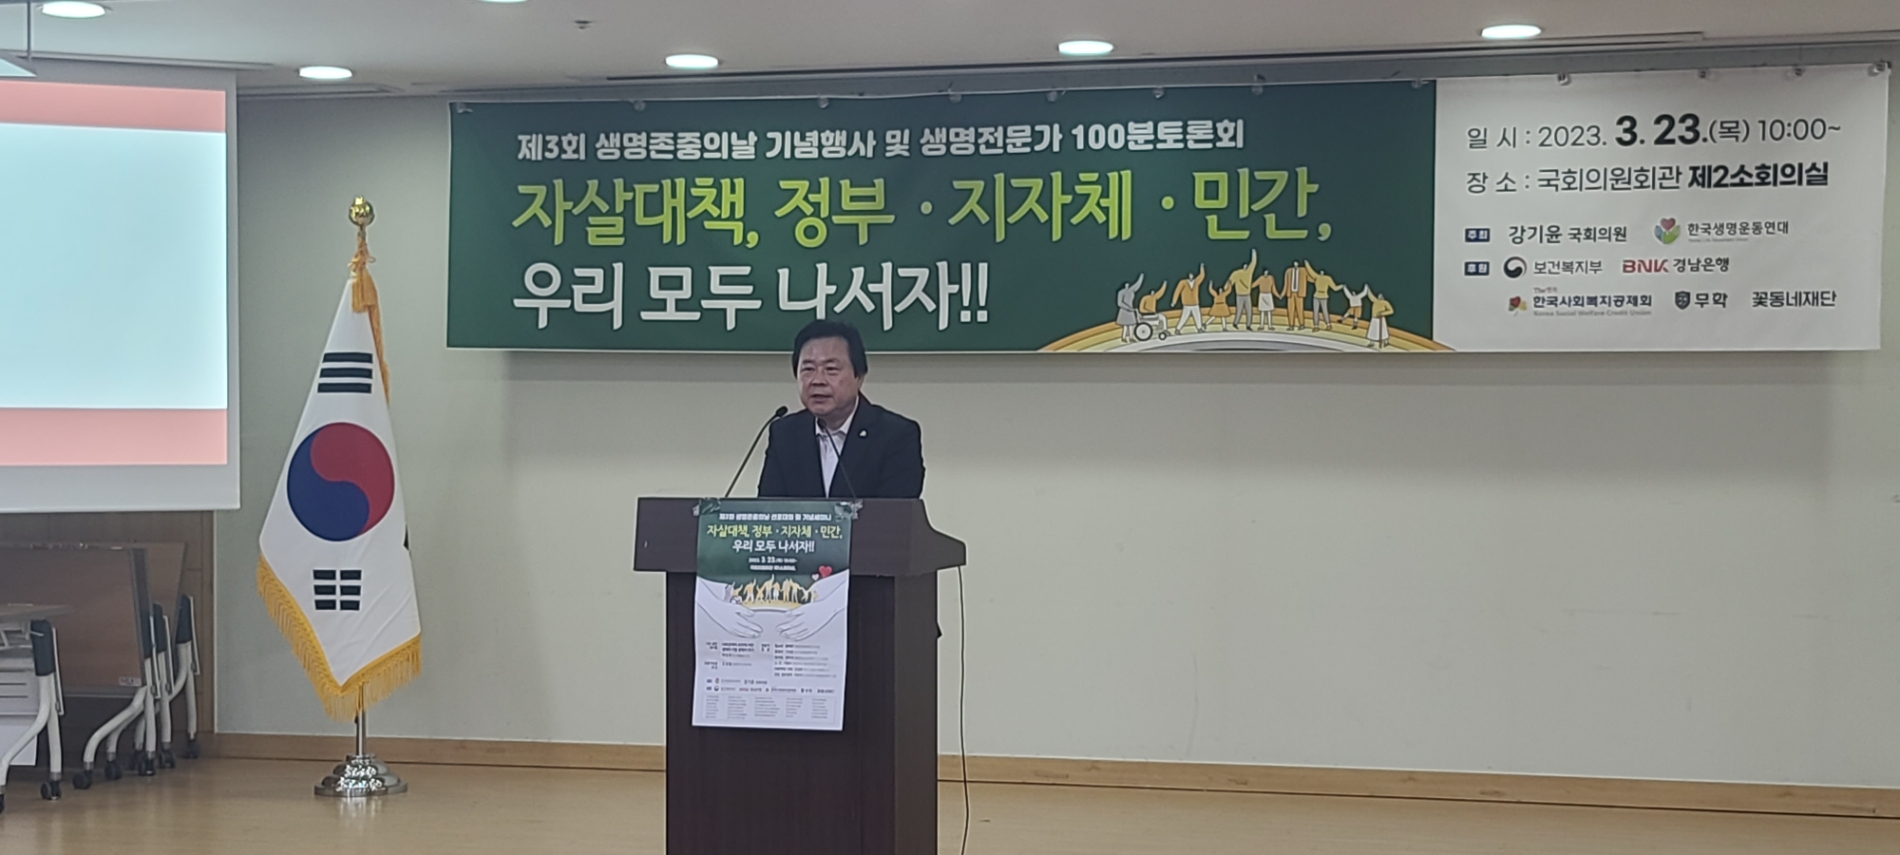 강기윤 의원, 자살예방대책 모색 ‘생명존중 토론회’ 개최